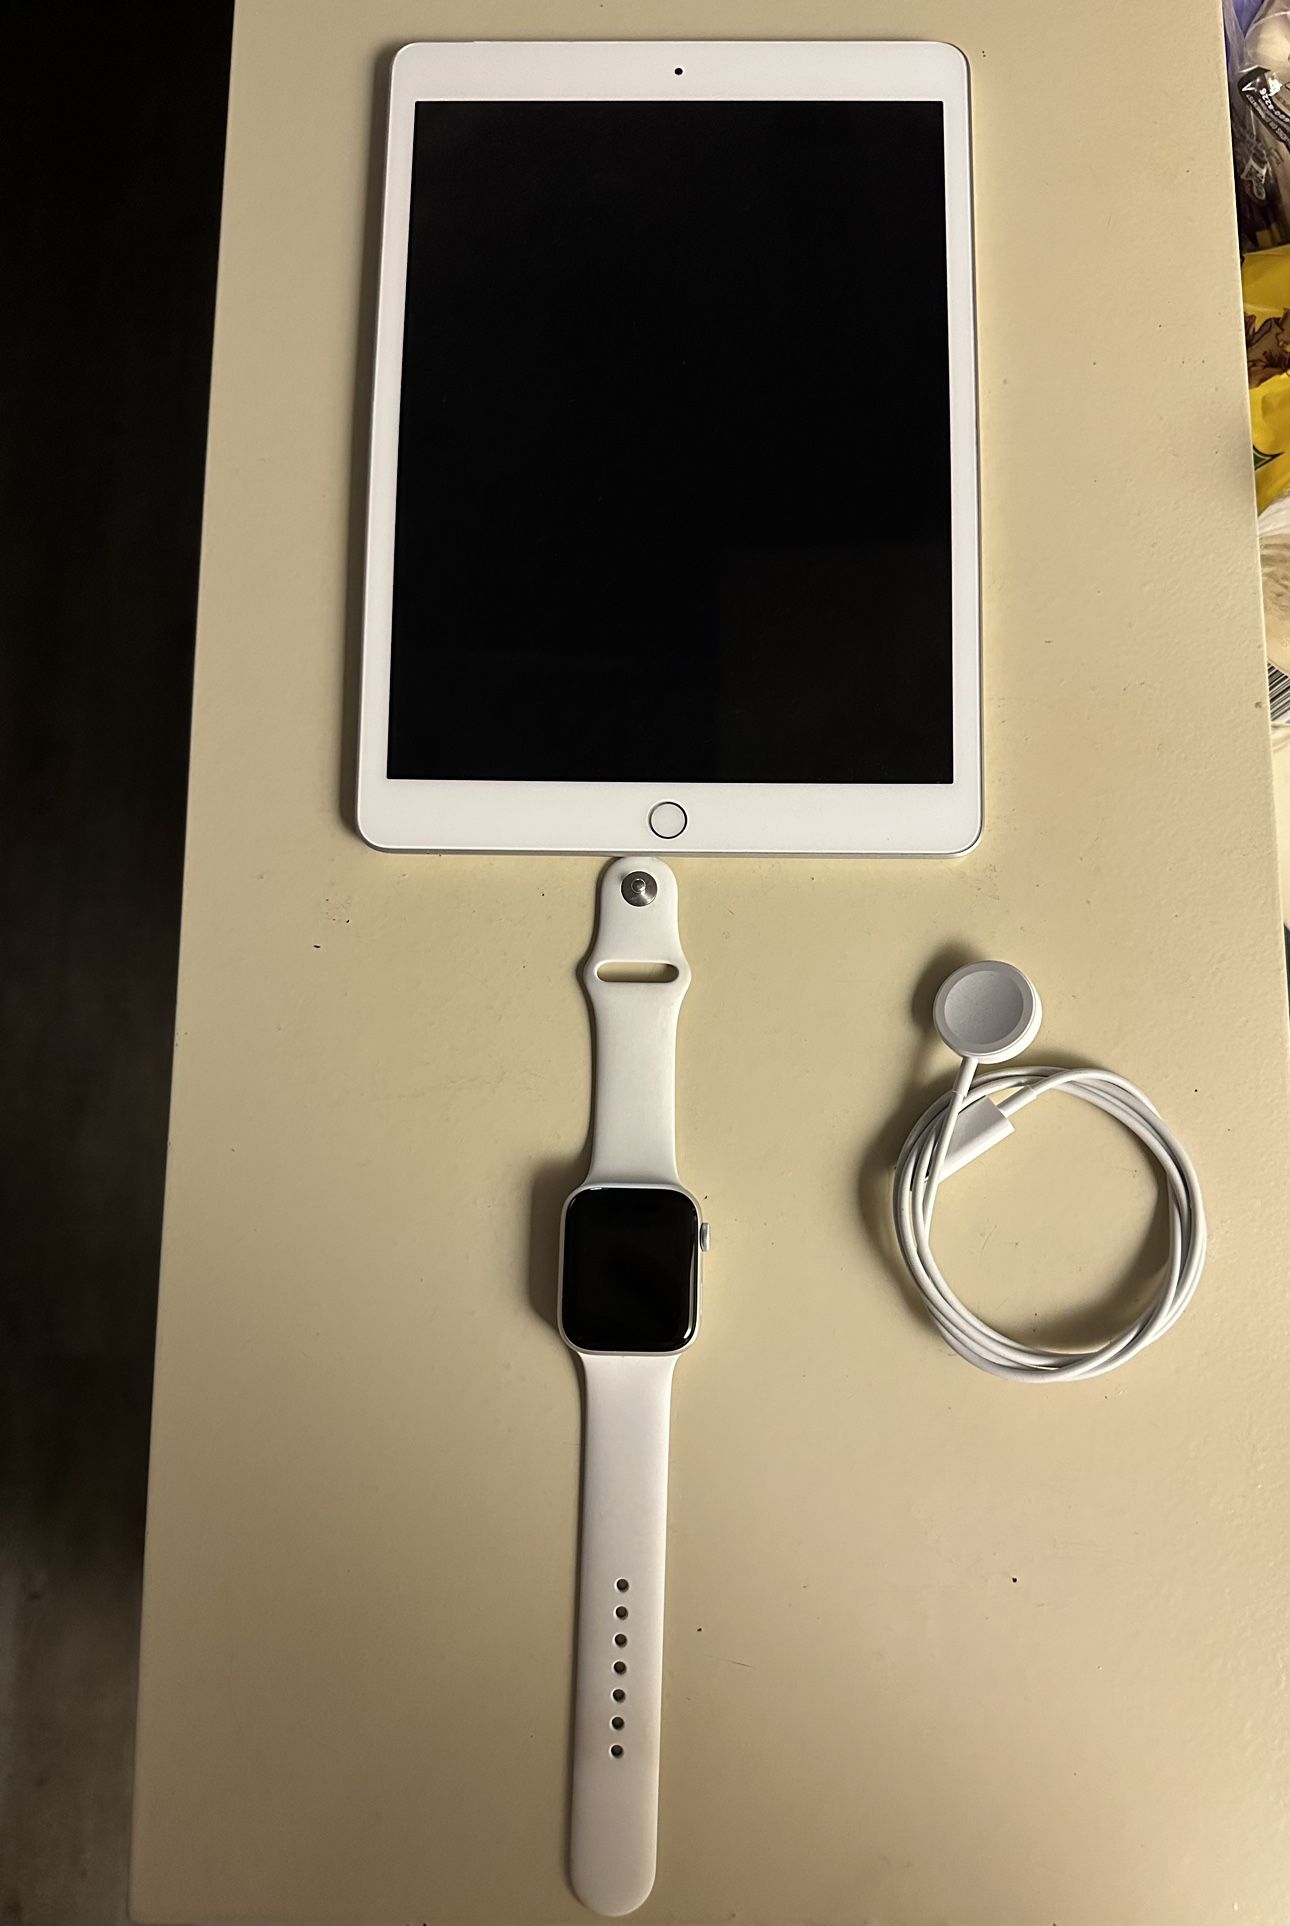 iPad And Apple Watch